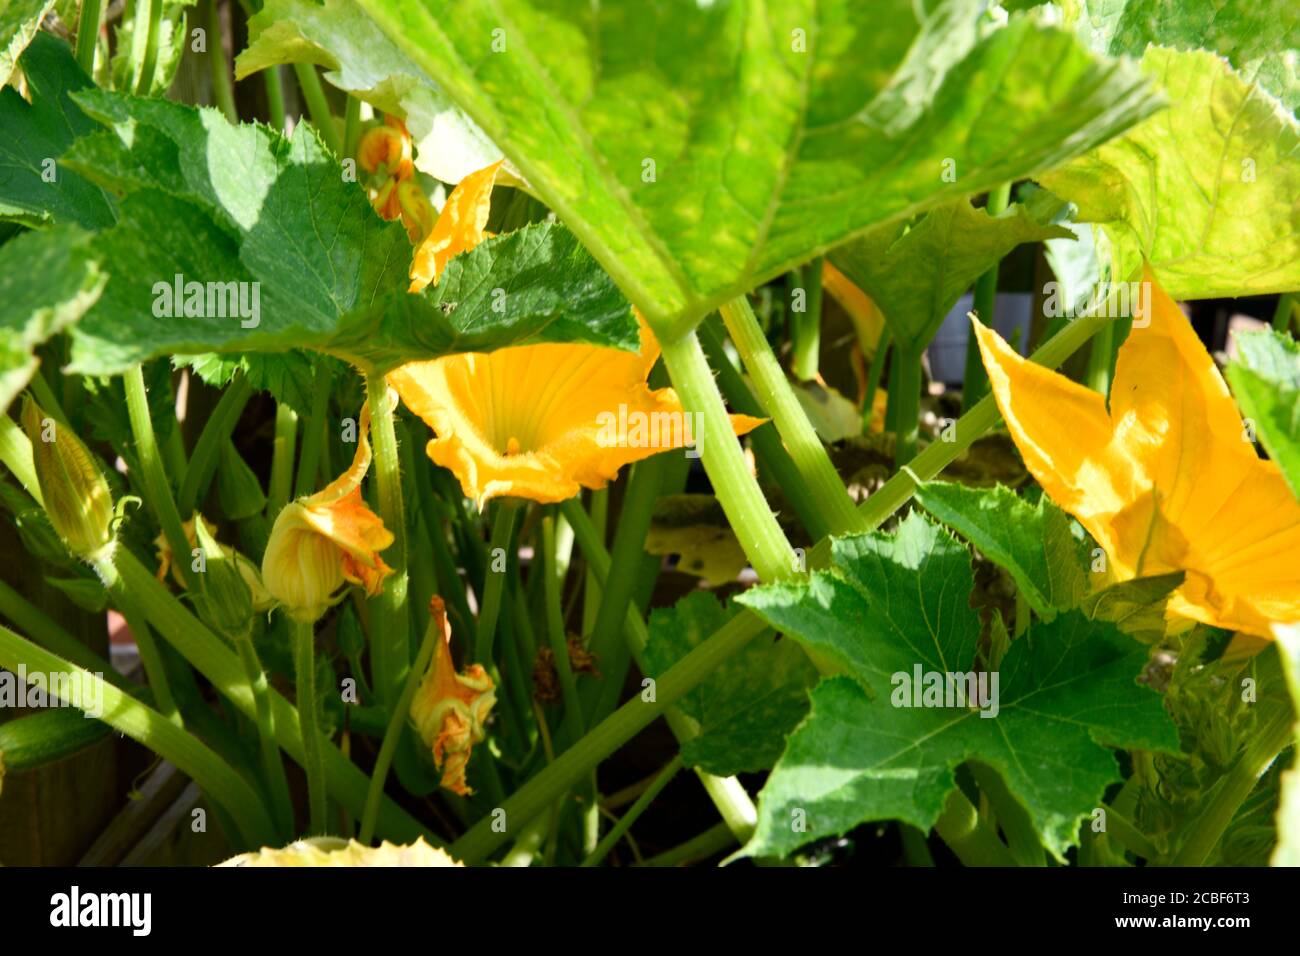 Mark Pflanze mit gelben Blumen Stockfotografie - Alamy